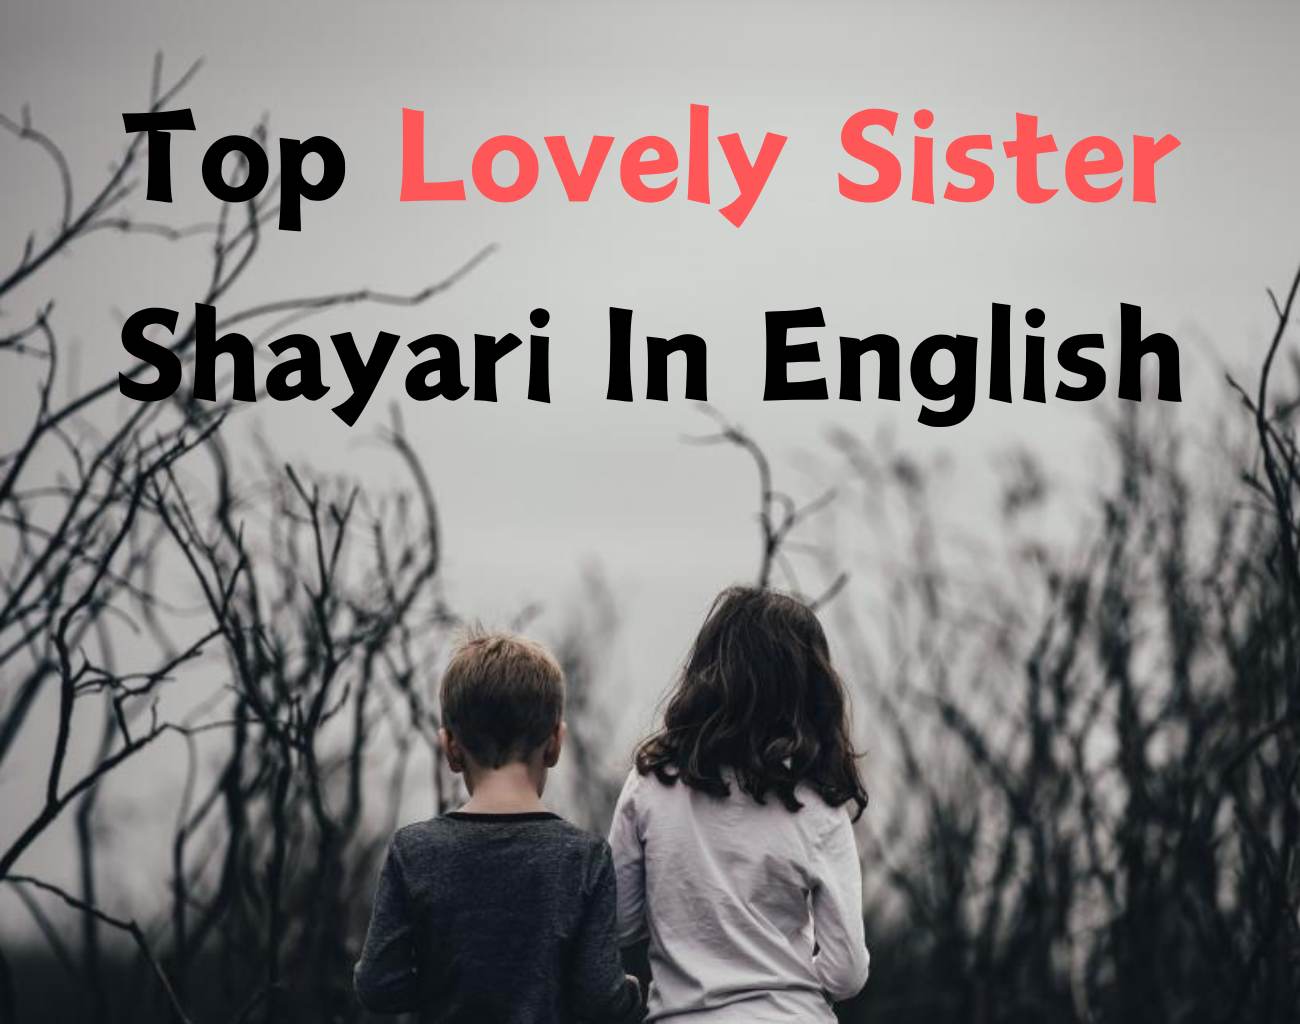 Sister Shayari In English